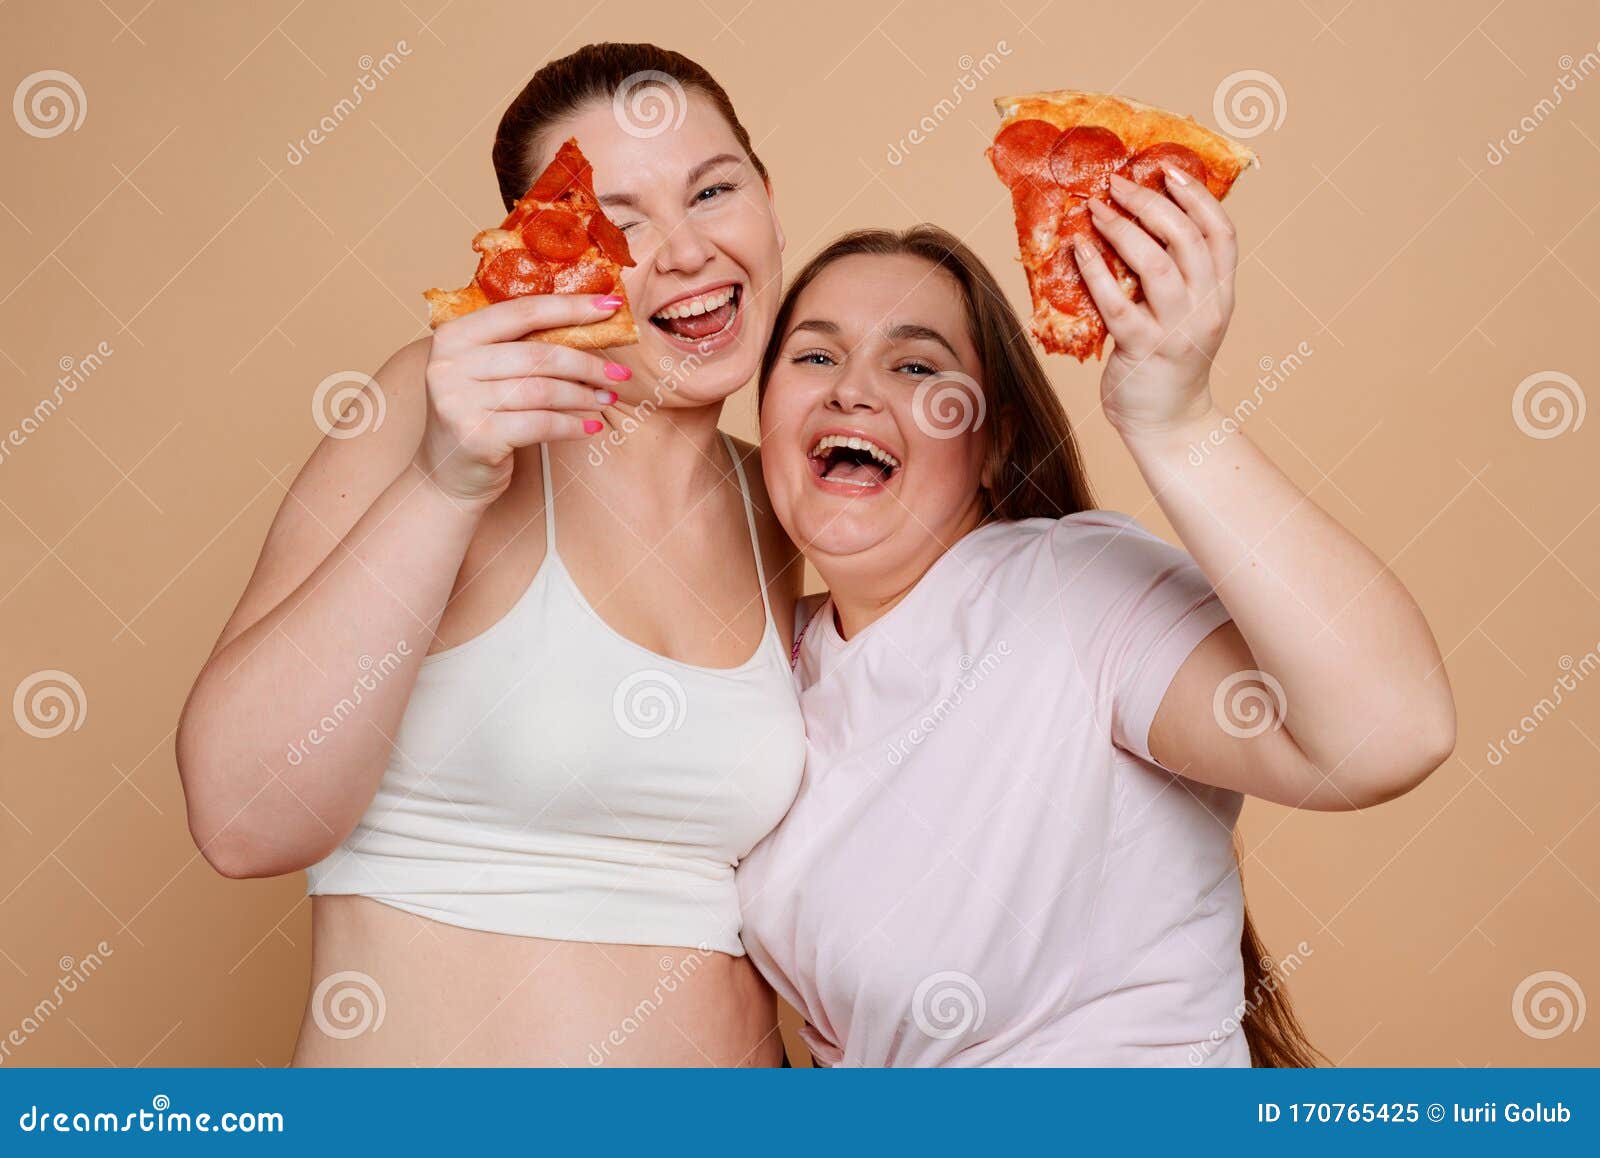 Niñas Gordas Entusiastas Comiendo Pizza Con Fondo Imagen de archivo - Imagen de vientre, hembra: 170765425